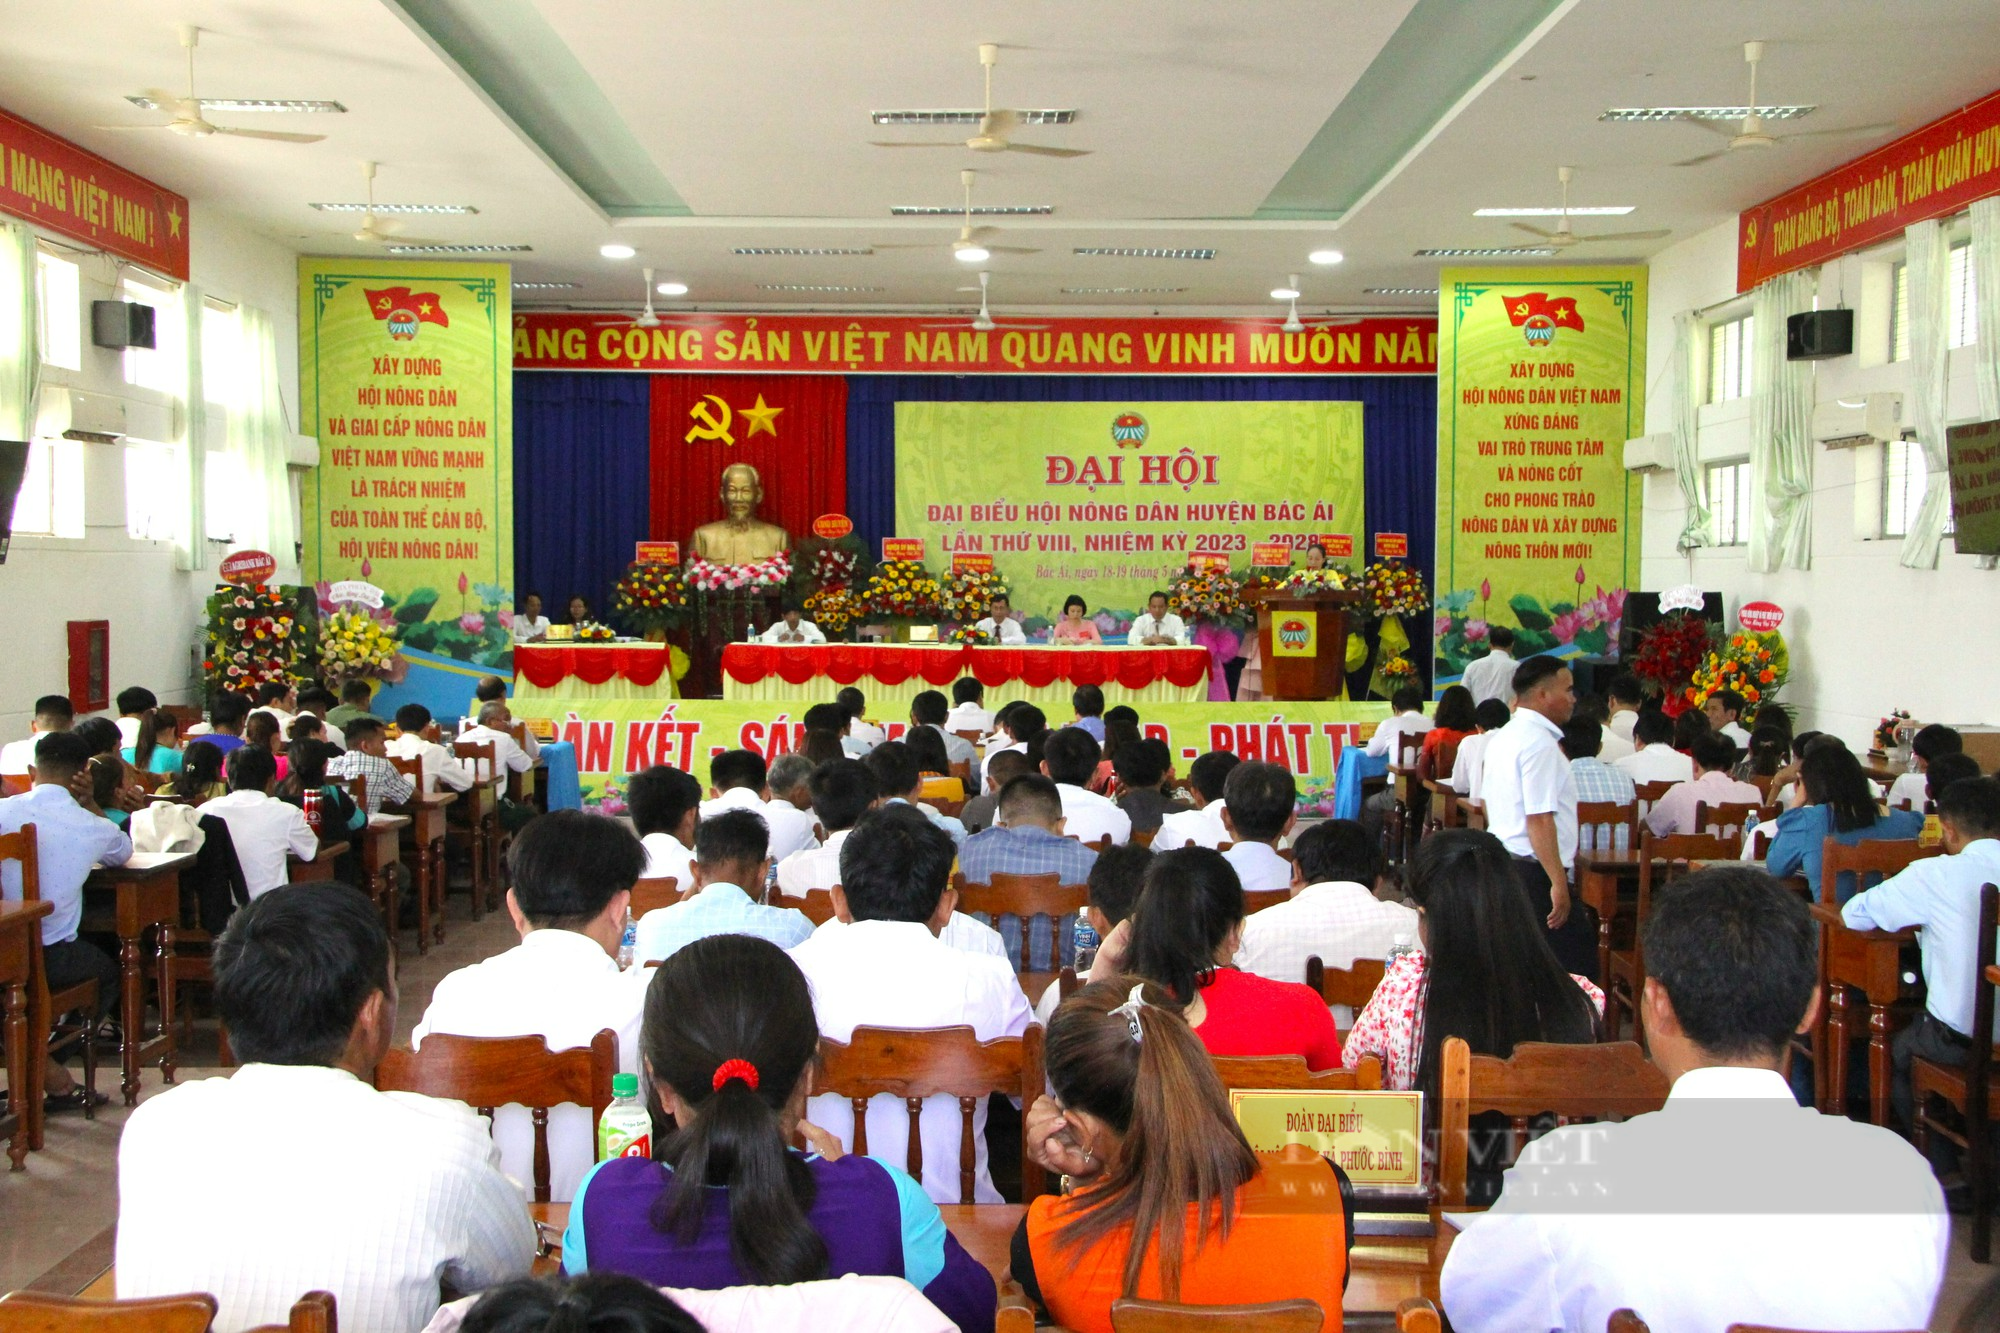 Đại Hội Đại biểu Hội Nông dân huyện Bác Ái ở Ninh Thuận, ông Nguyễn Đức Nghĩa tái đắc cử Chủ tịch - Ảnh 1.